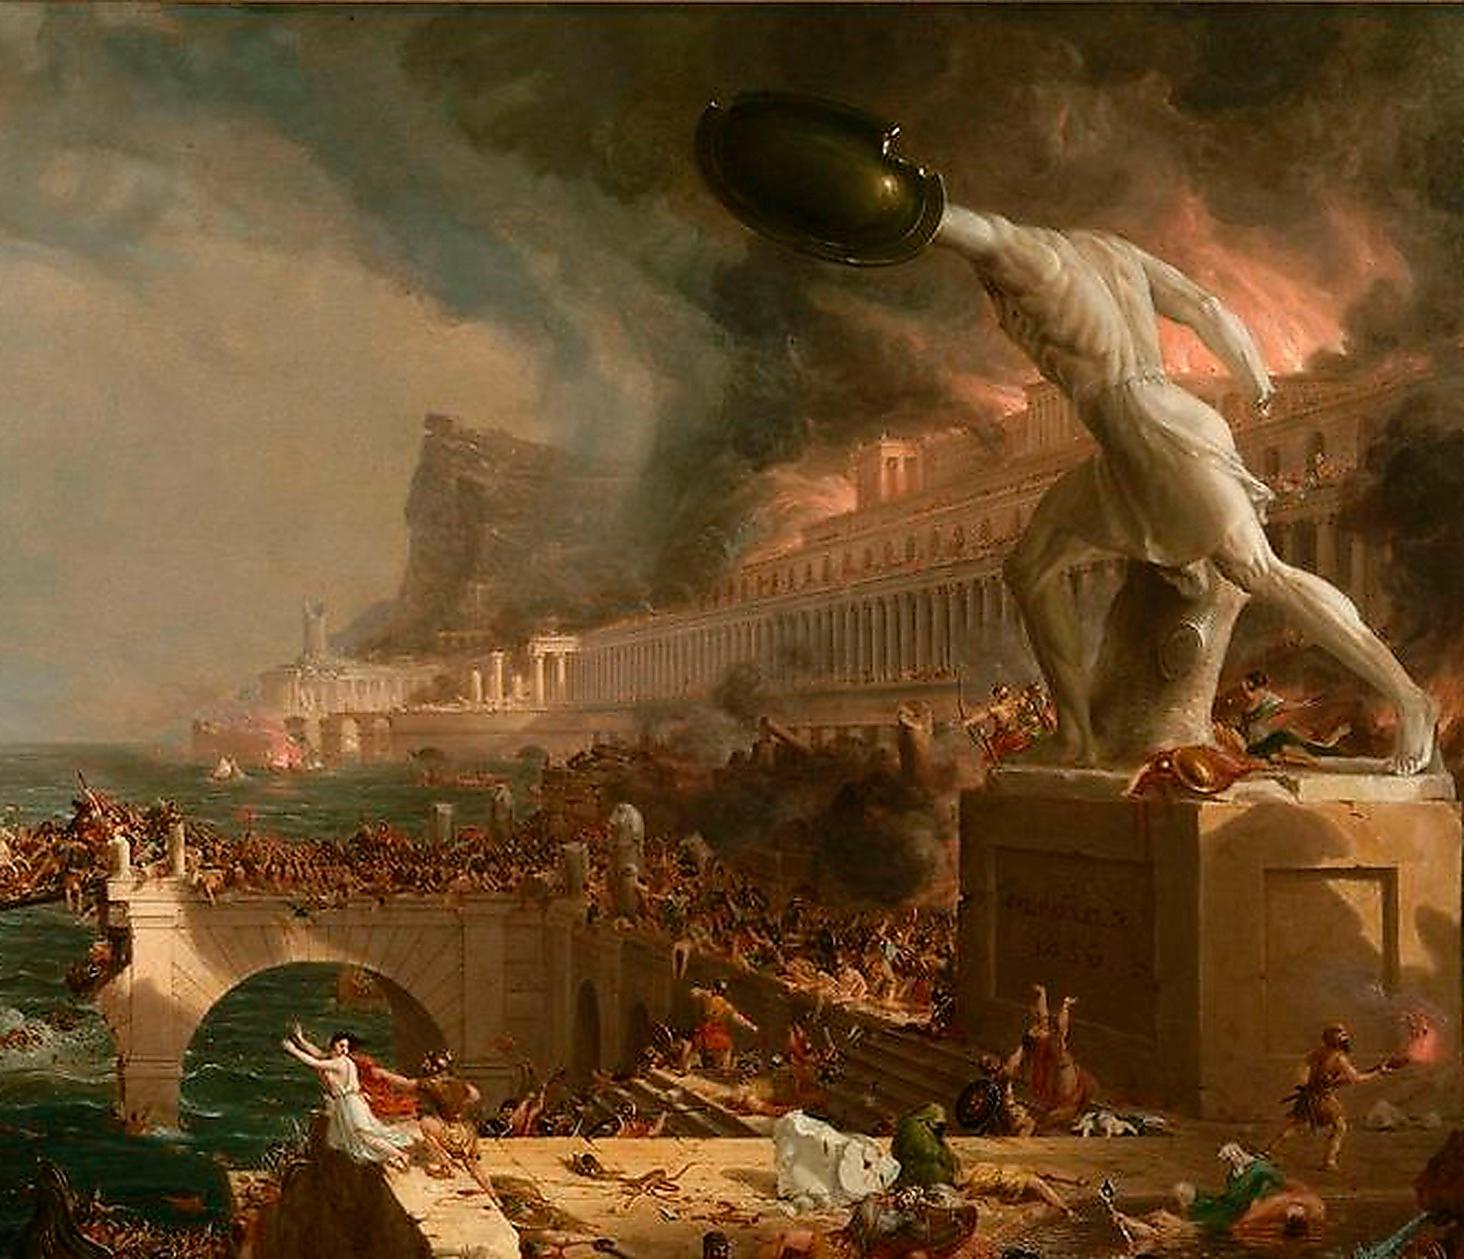 Efter 350 år av blomstrande herravälde drabbades Romarriket av klimatkatastrofer och dödliga epidemier. På 400-talet plundrades Rom av goter. En era var över.